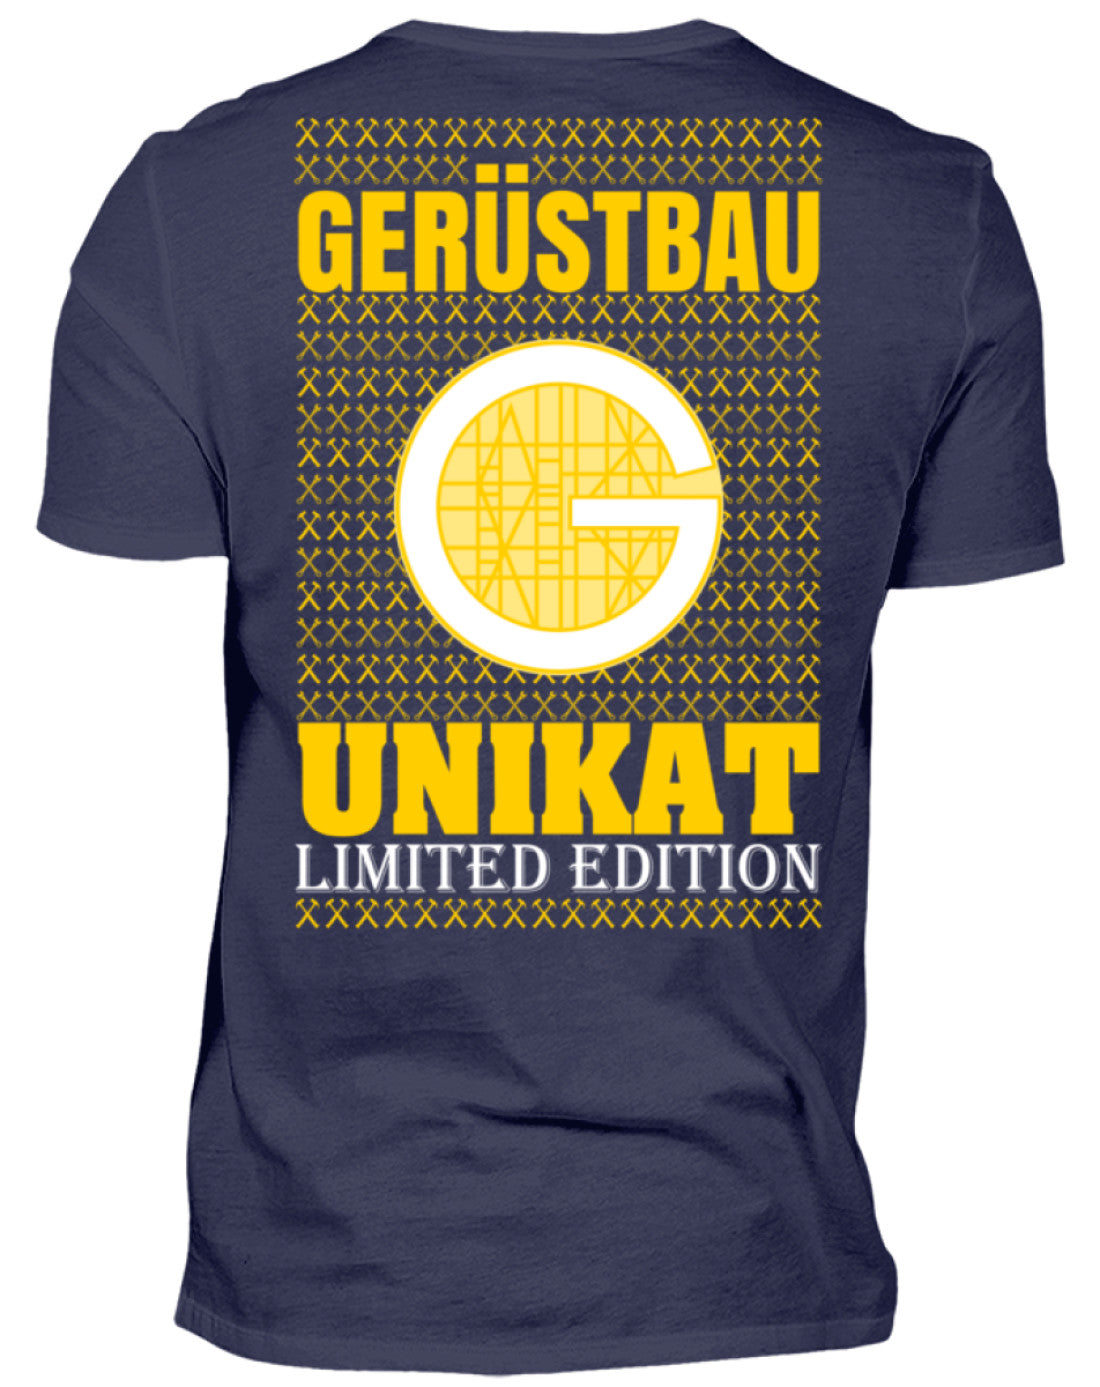 Gerüstbauer Unikat  - Herren V-Neck Shirt €24.95 Gerüstbauer - Shop >>